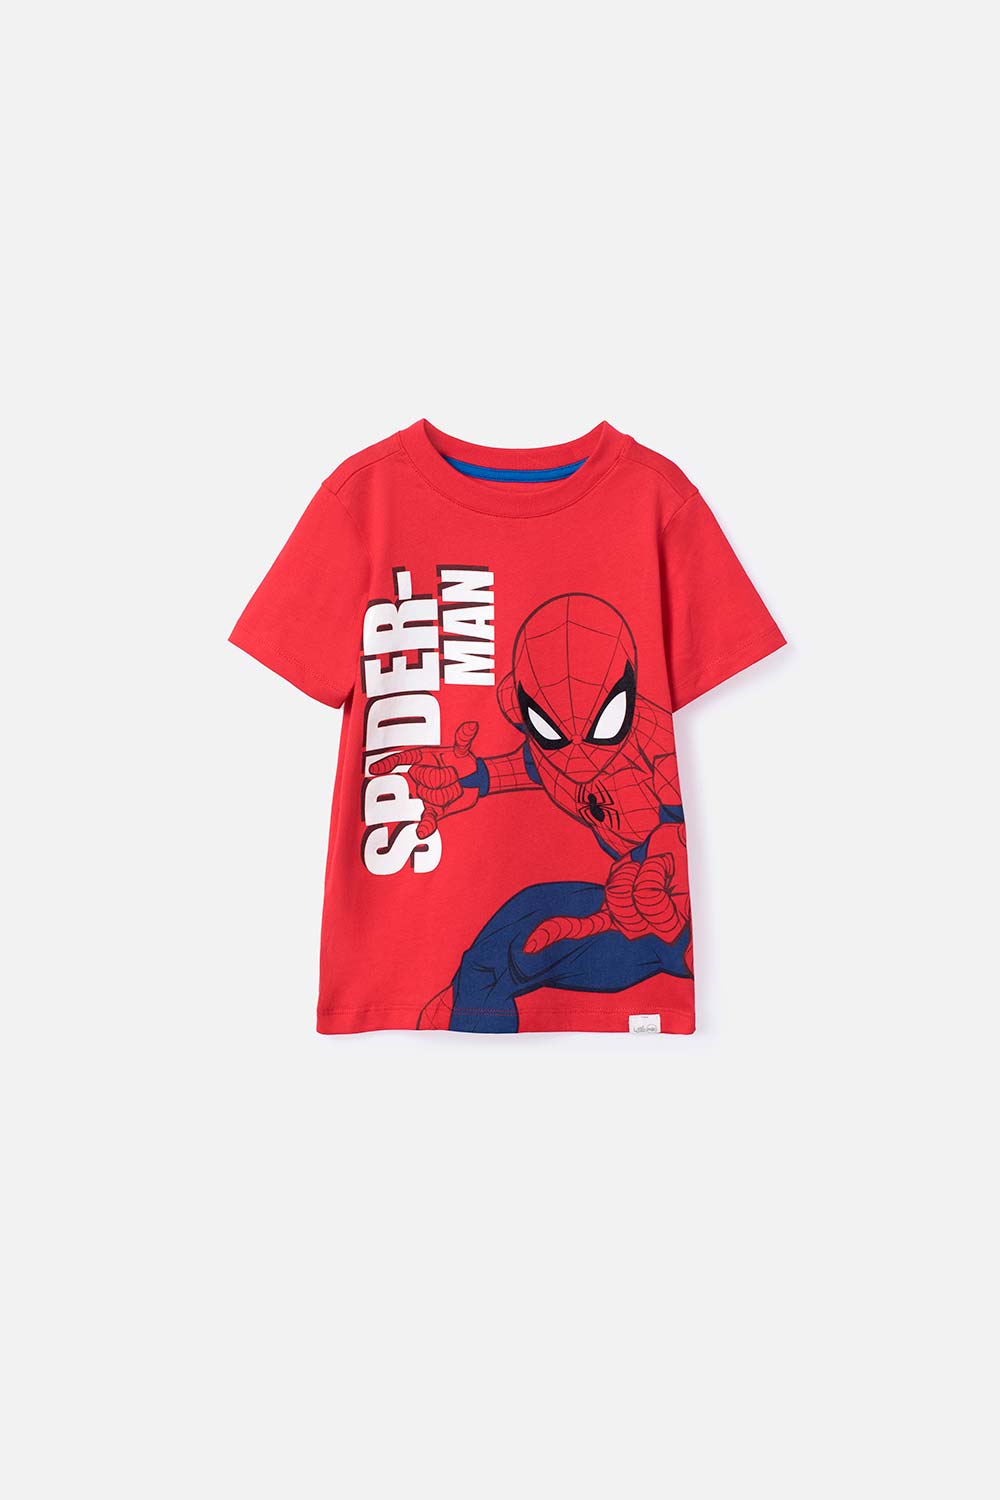 Camiseta de niño, manga corta roja de Spiderman - Ponemos la Fantasía!